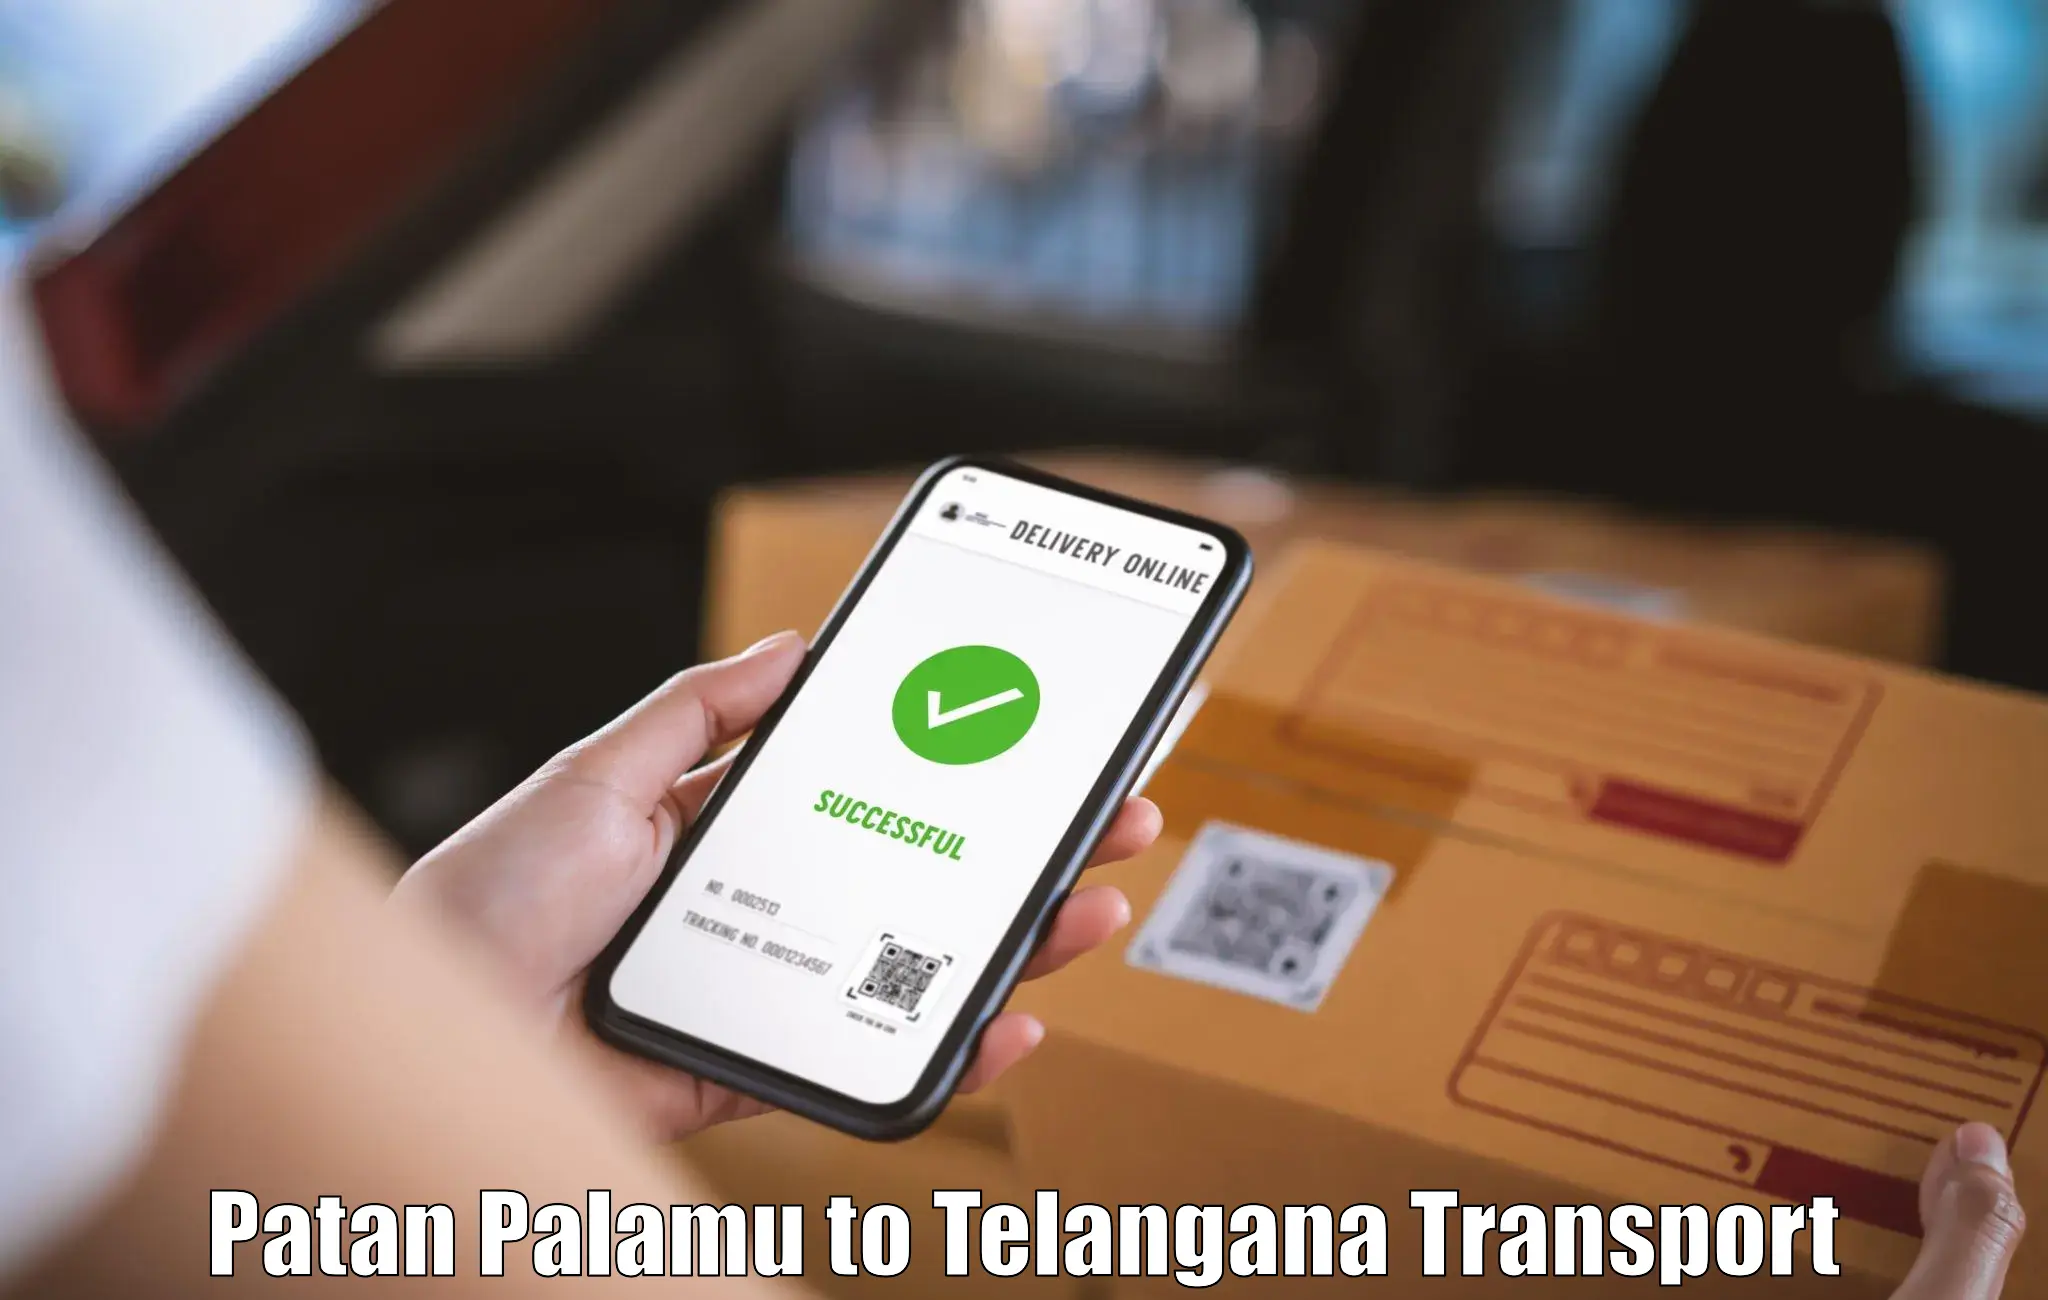 Land transport services Patan Palamu to Telangana